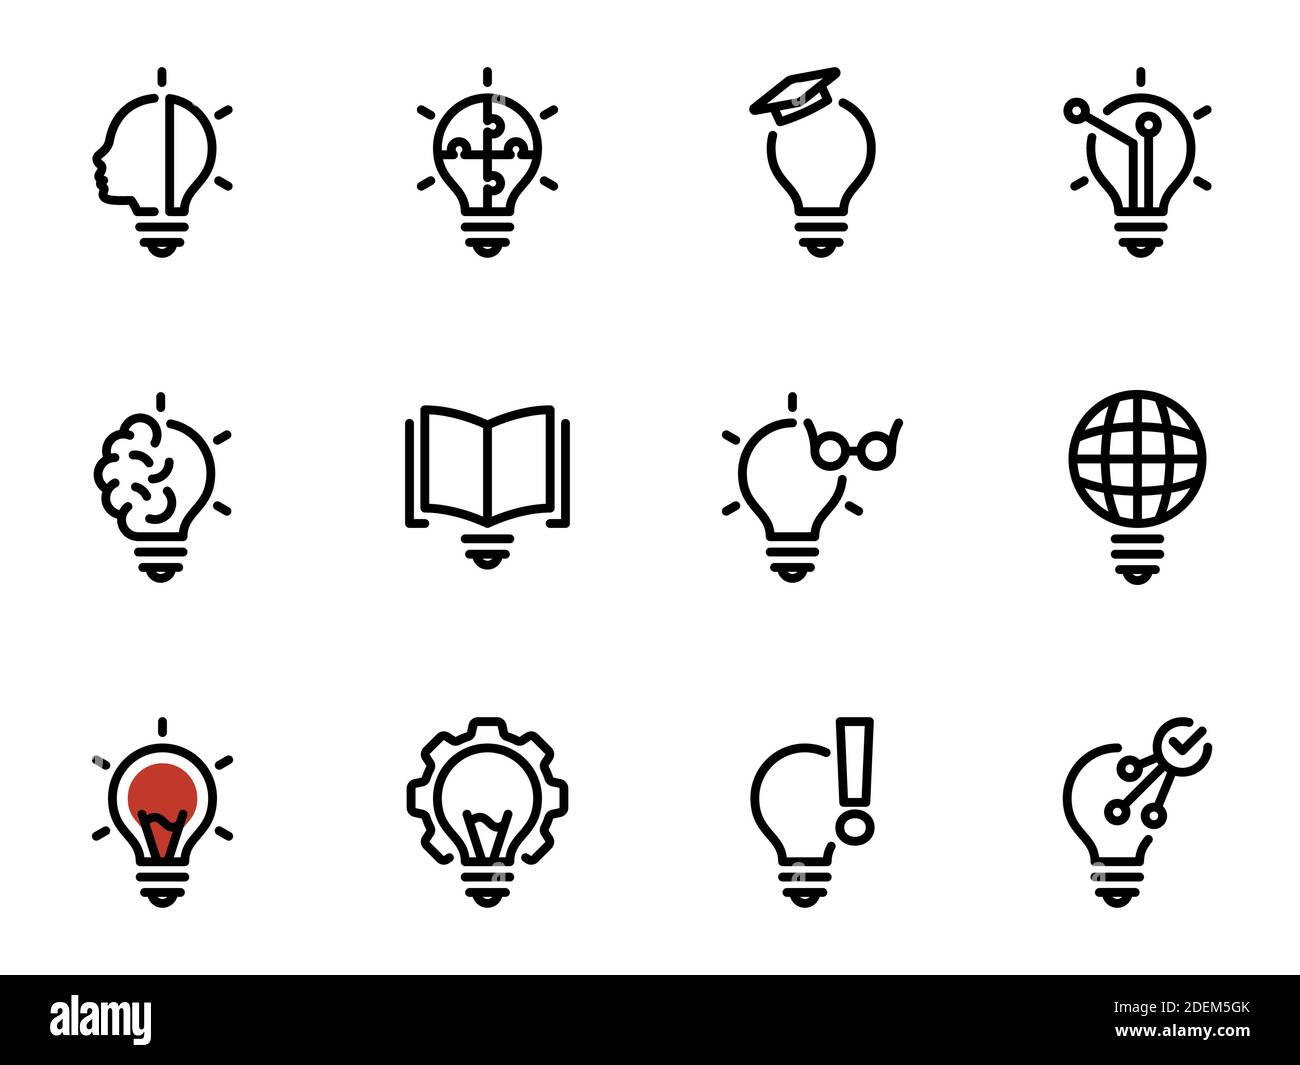 Set di icone vettoriali nere, isolate su sfondo bianco. Illustrazione su un tema fonte di luce creativa, avvertenza, sintonizzazione e utilizzo di lampadine intelligenti Illustrazione Vettoriale